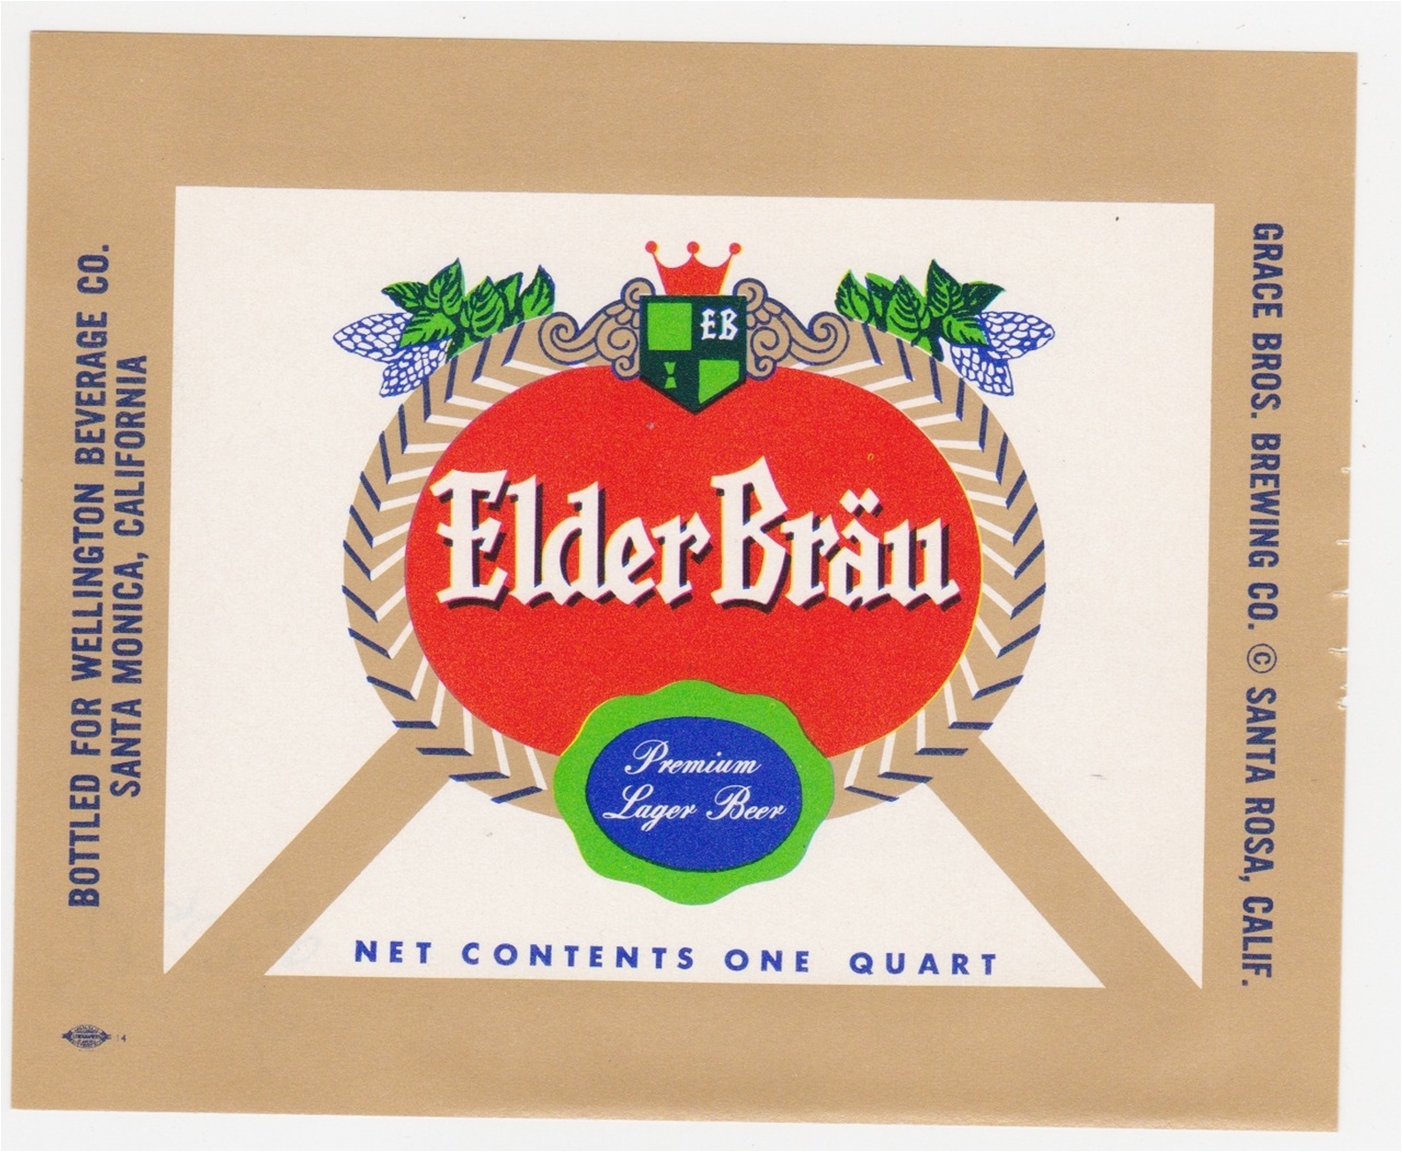 Elder Brau Beer Label